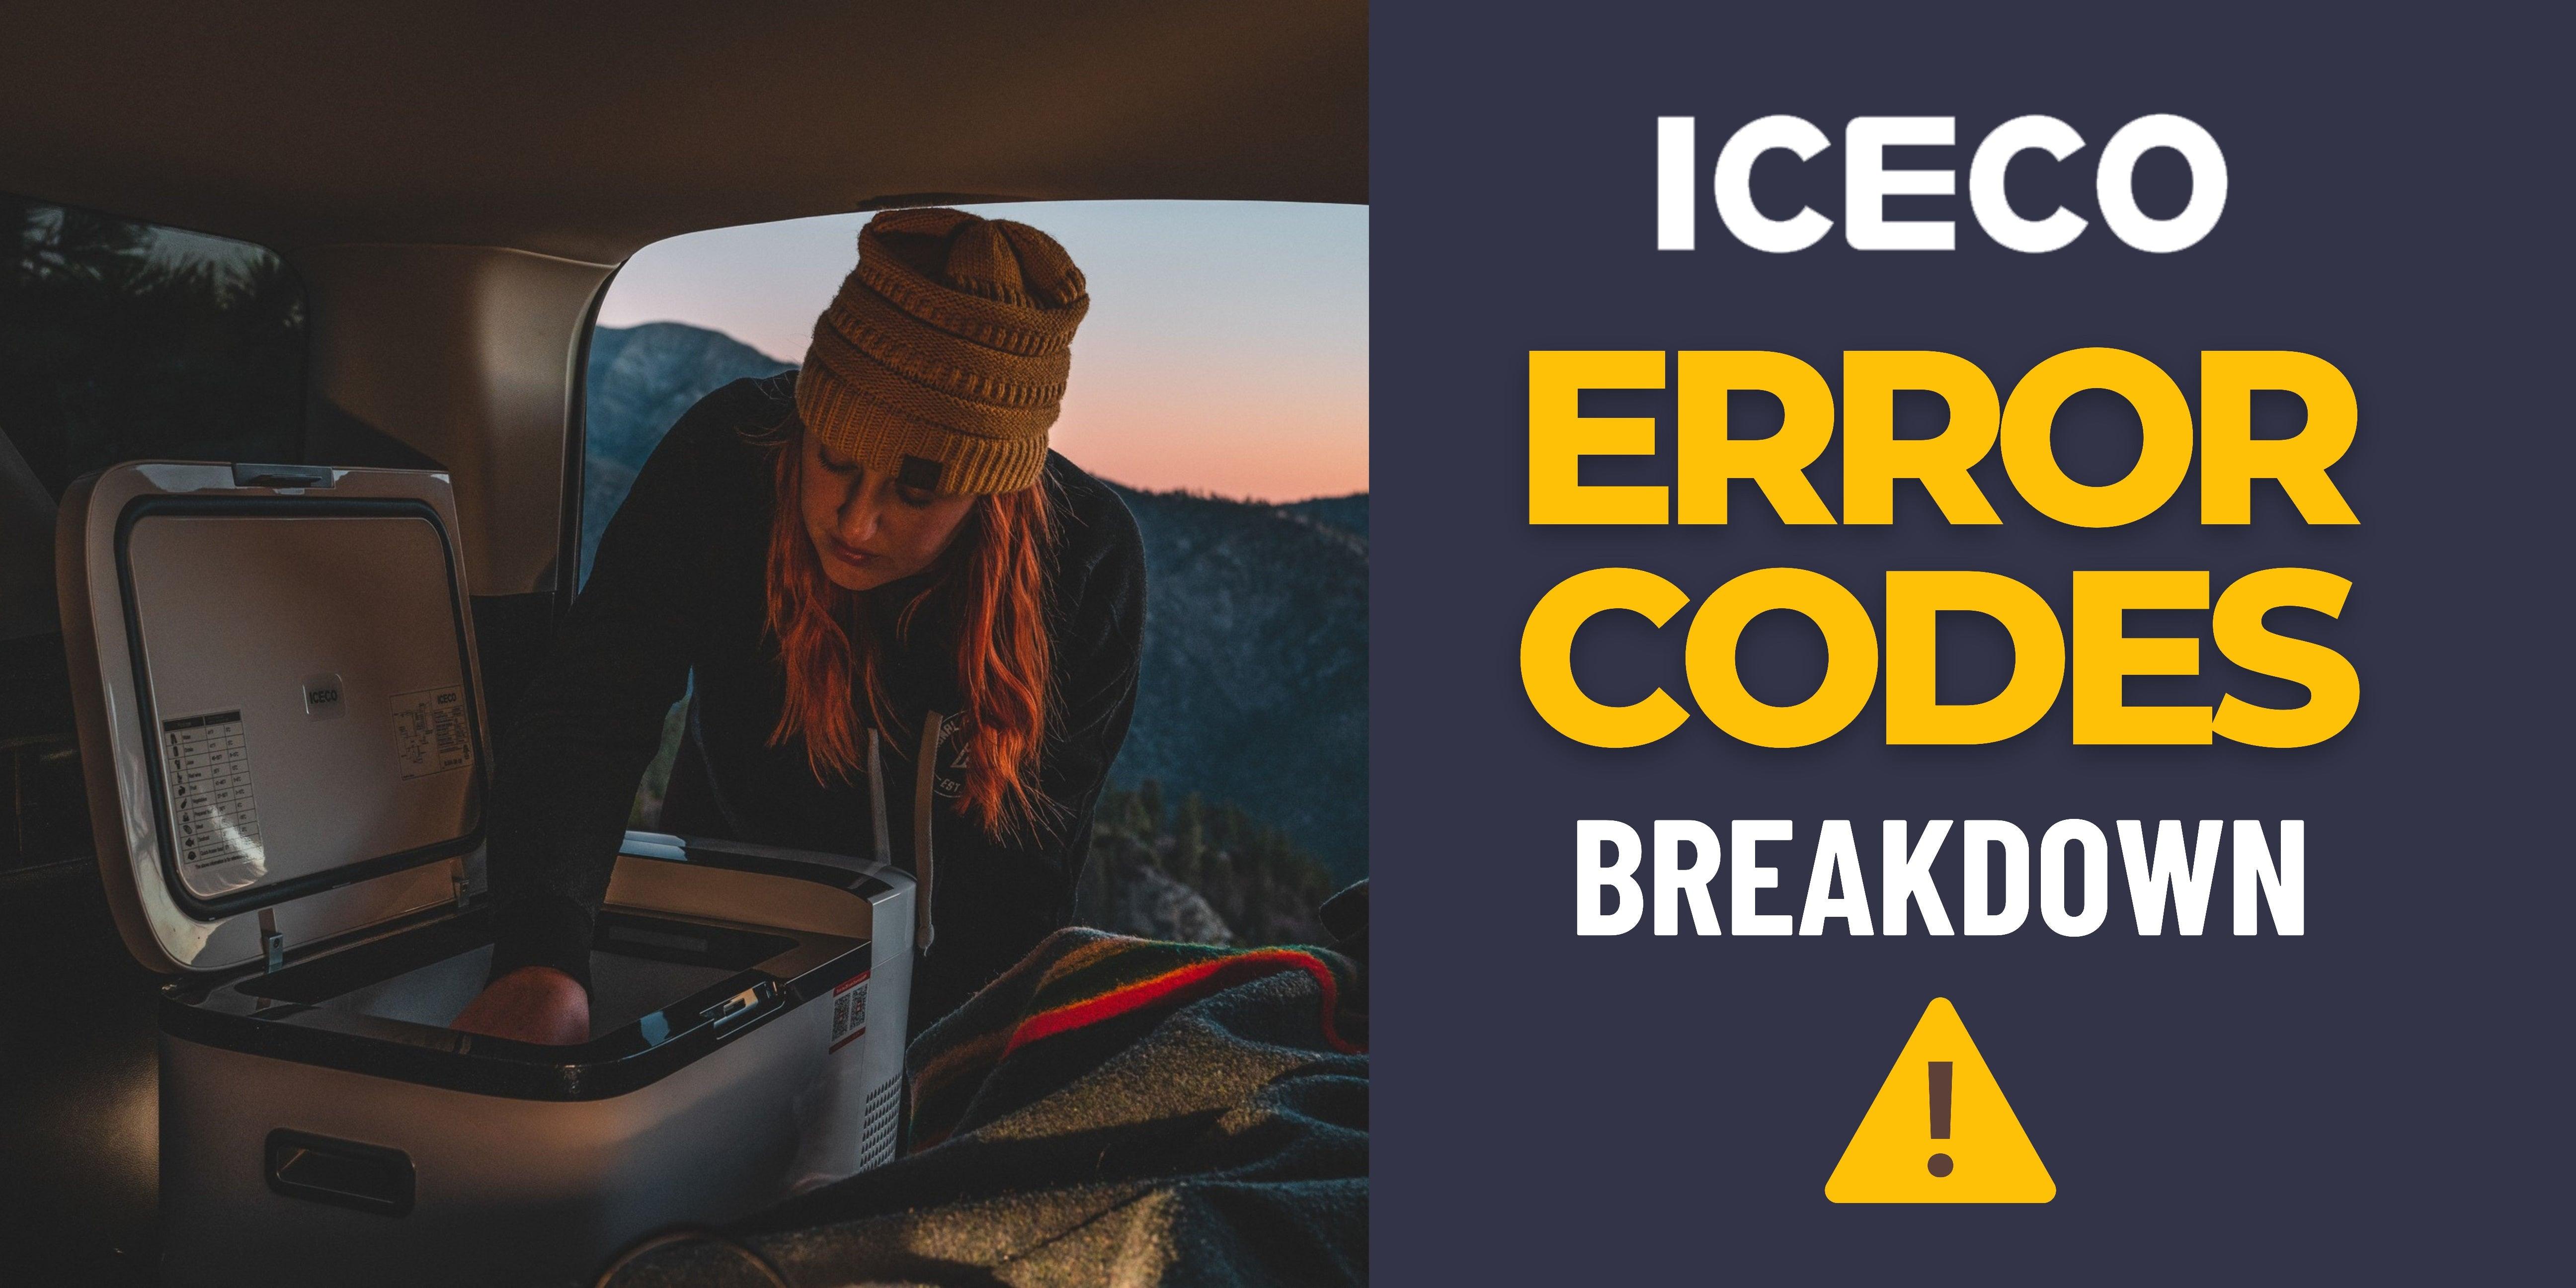 ICECO Error Codes Breakdown - www.icecofreezer.com